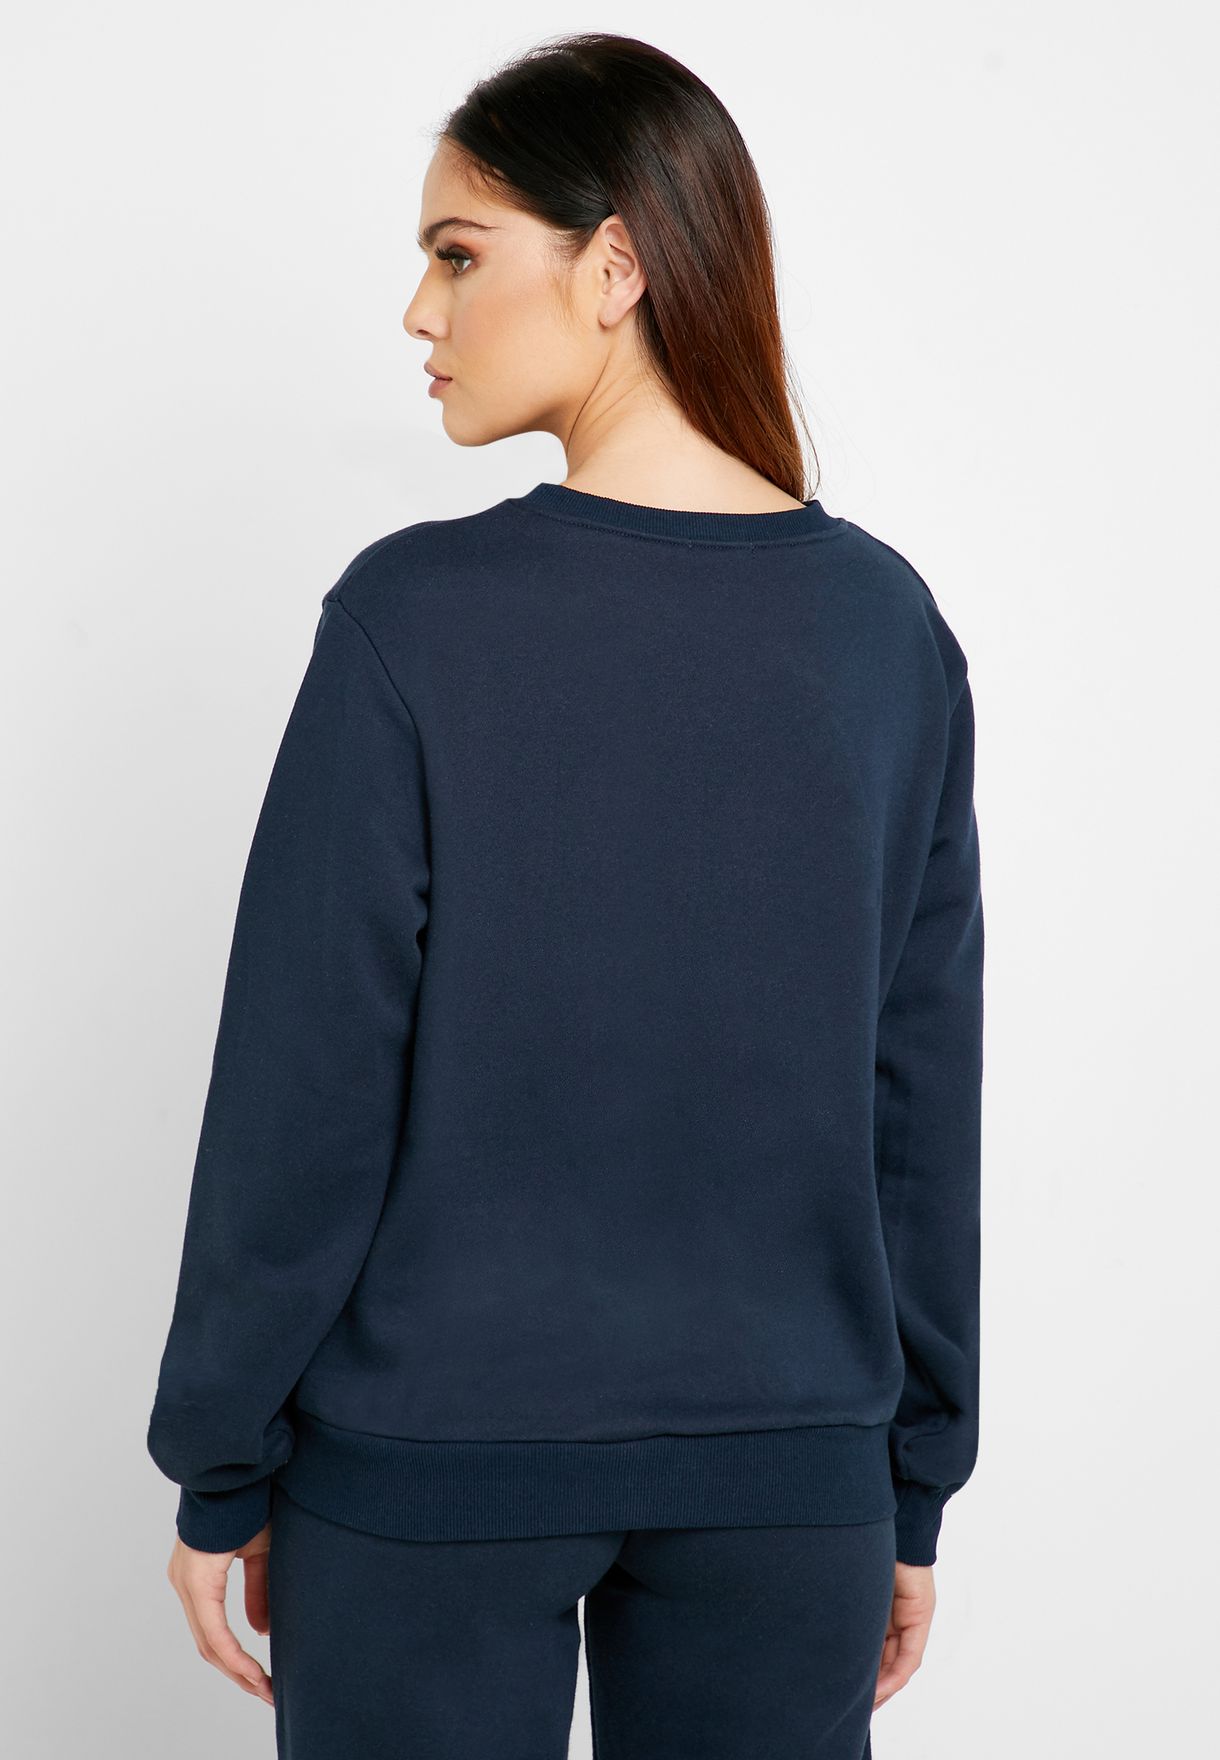 Buy Ginger Basics navy Essential Crew Neck Sweatshirt for Women in